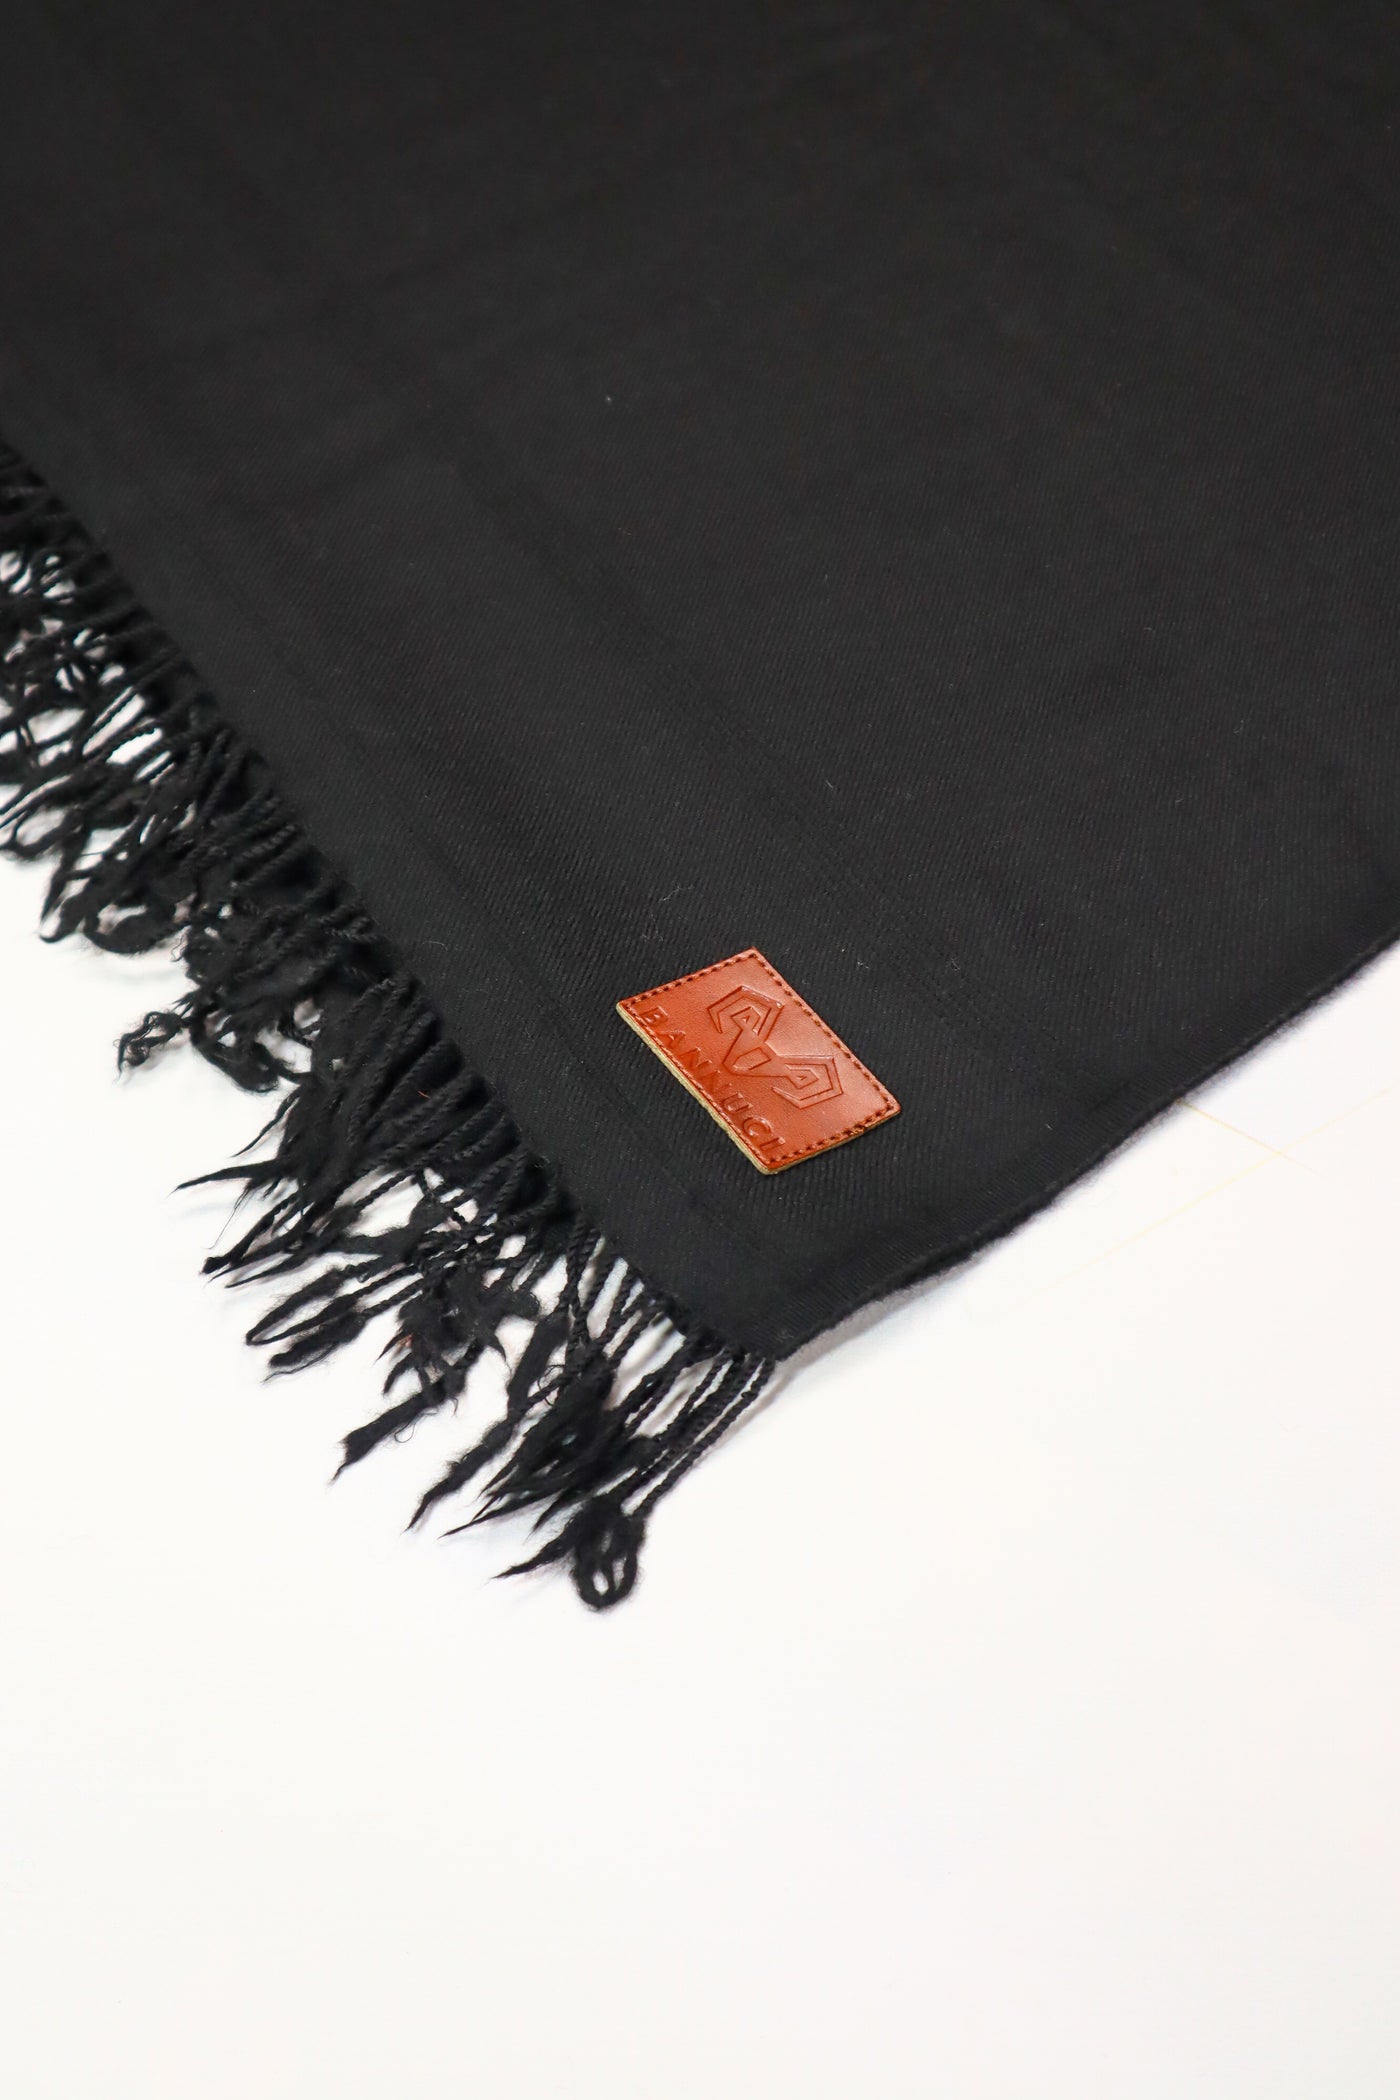 Premium Quality Plain Double Fiber Black Pure Woolen Shawl by BANNUCI